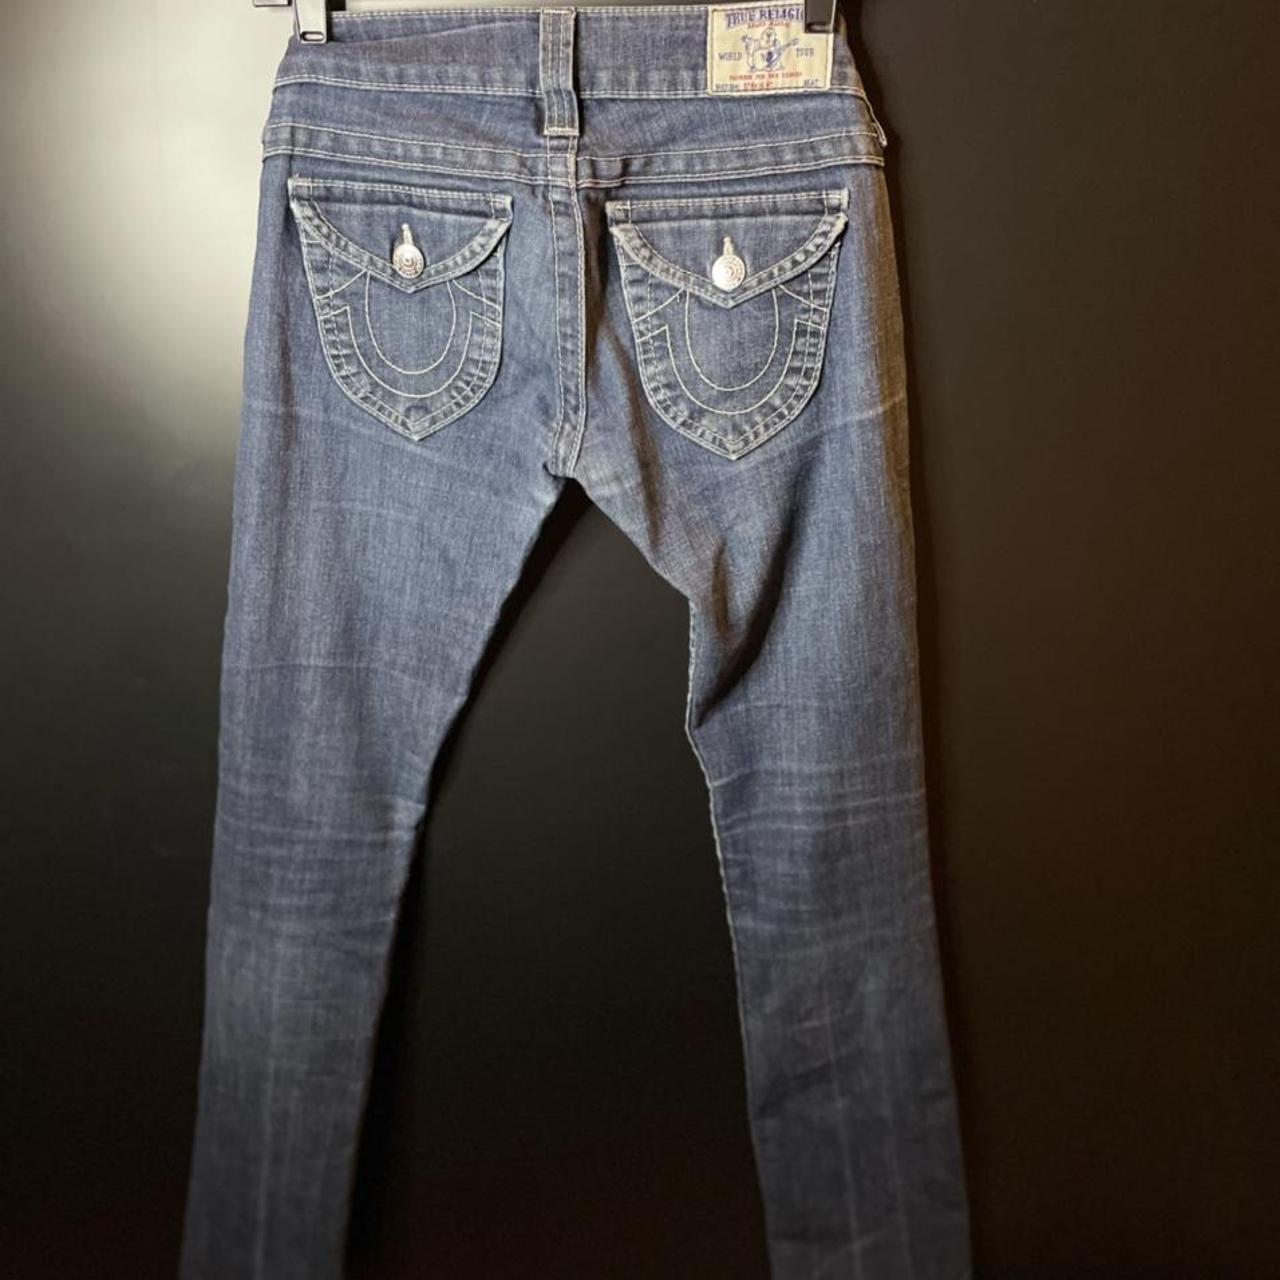 Low rise true religion jeans women size 25 Open to... - Depop